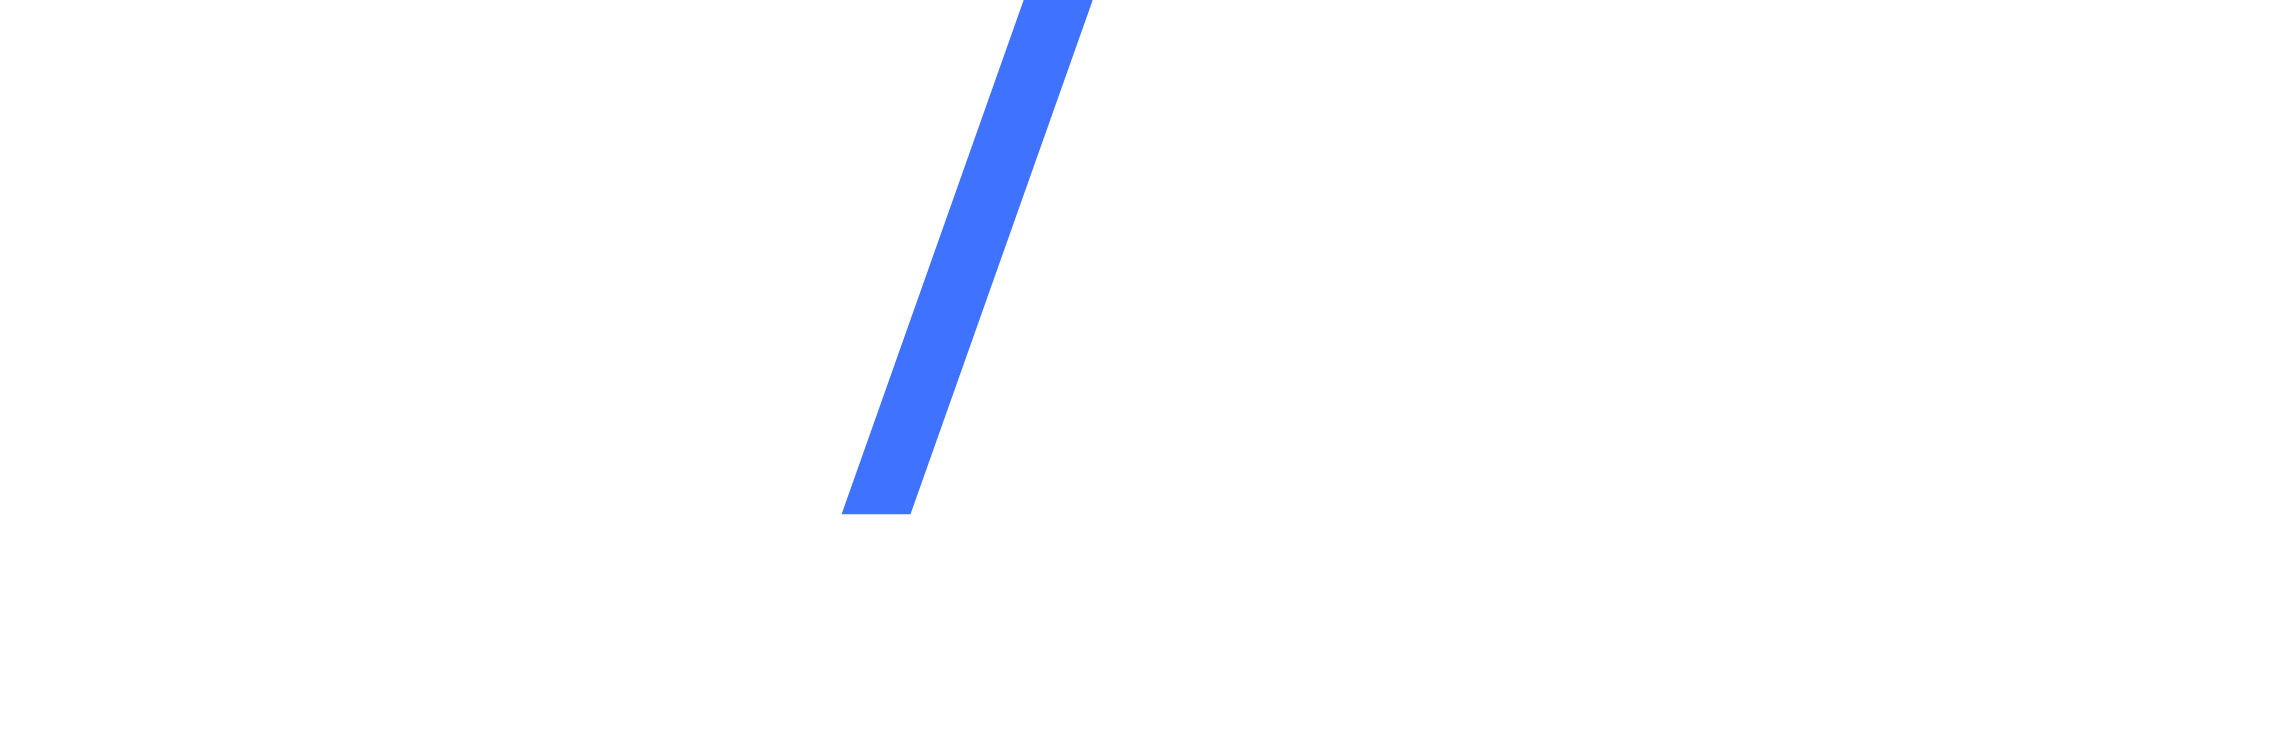 Evolution Equity Partners Logo White